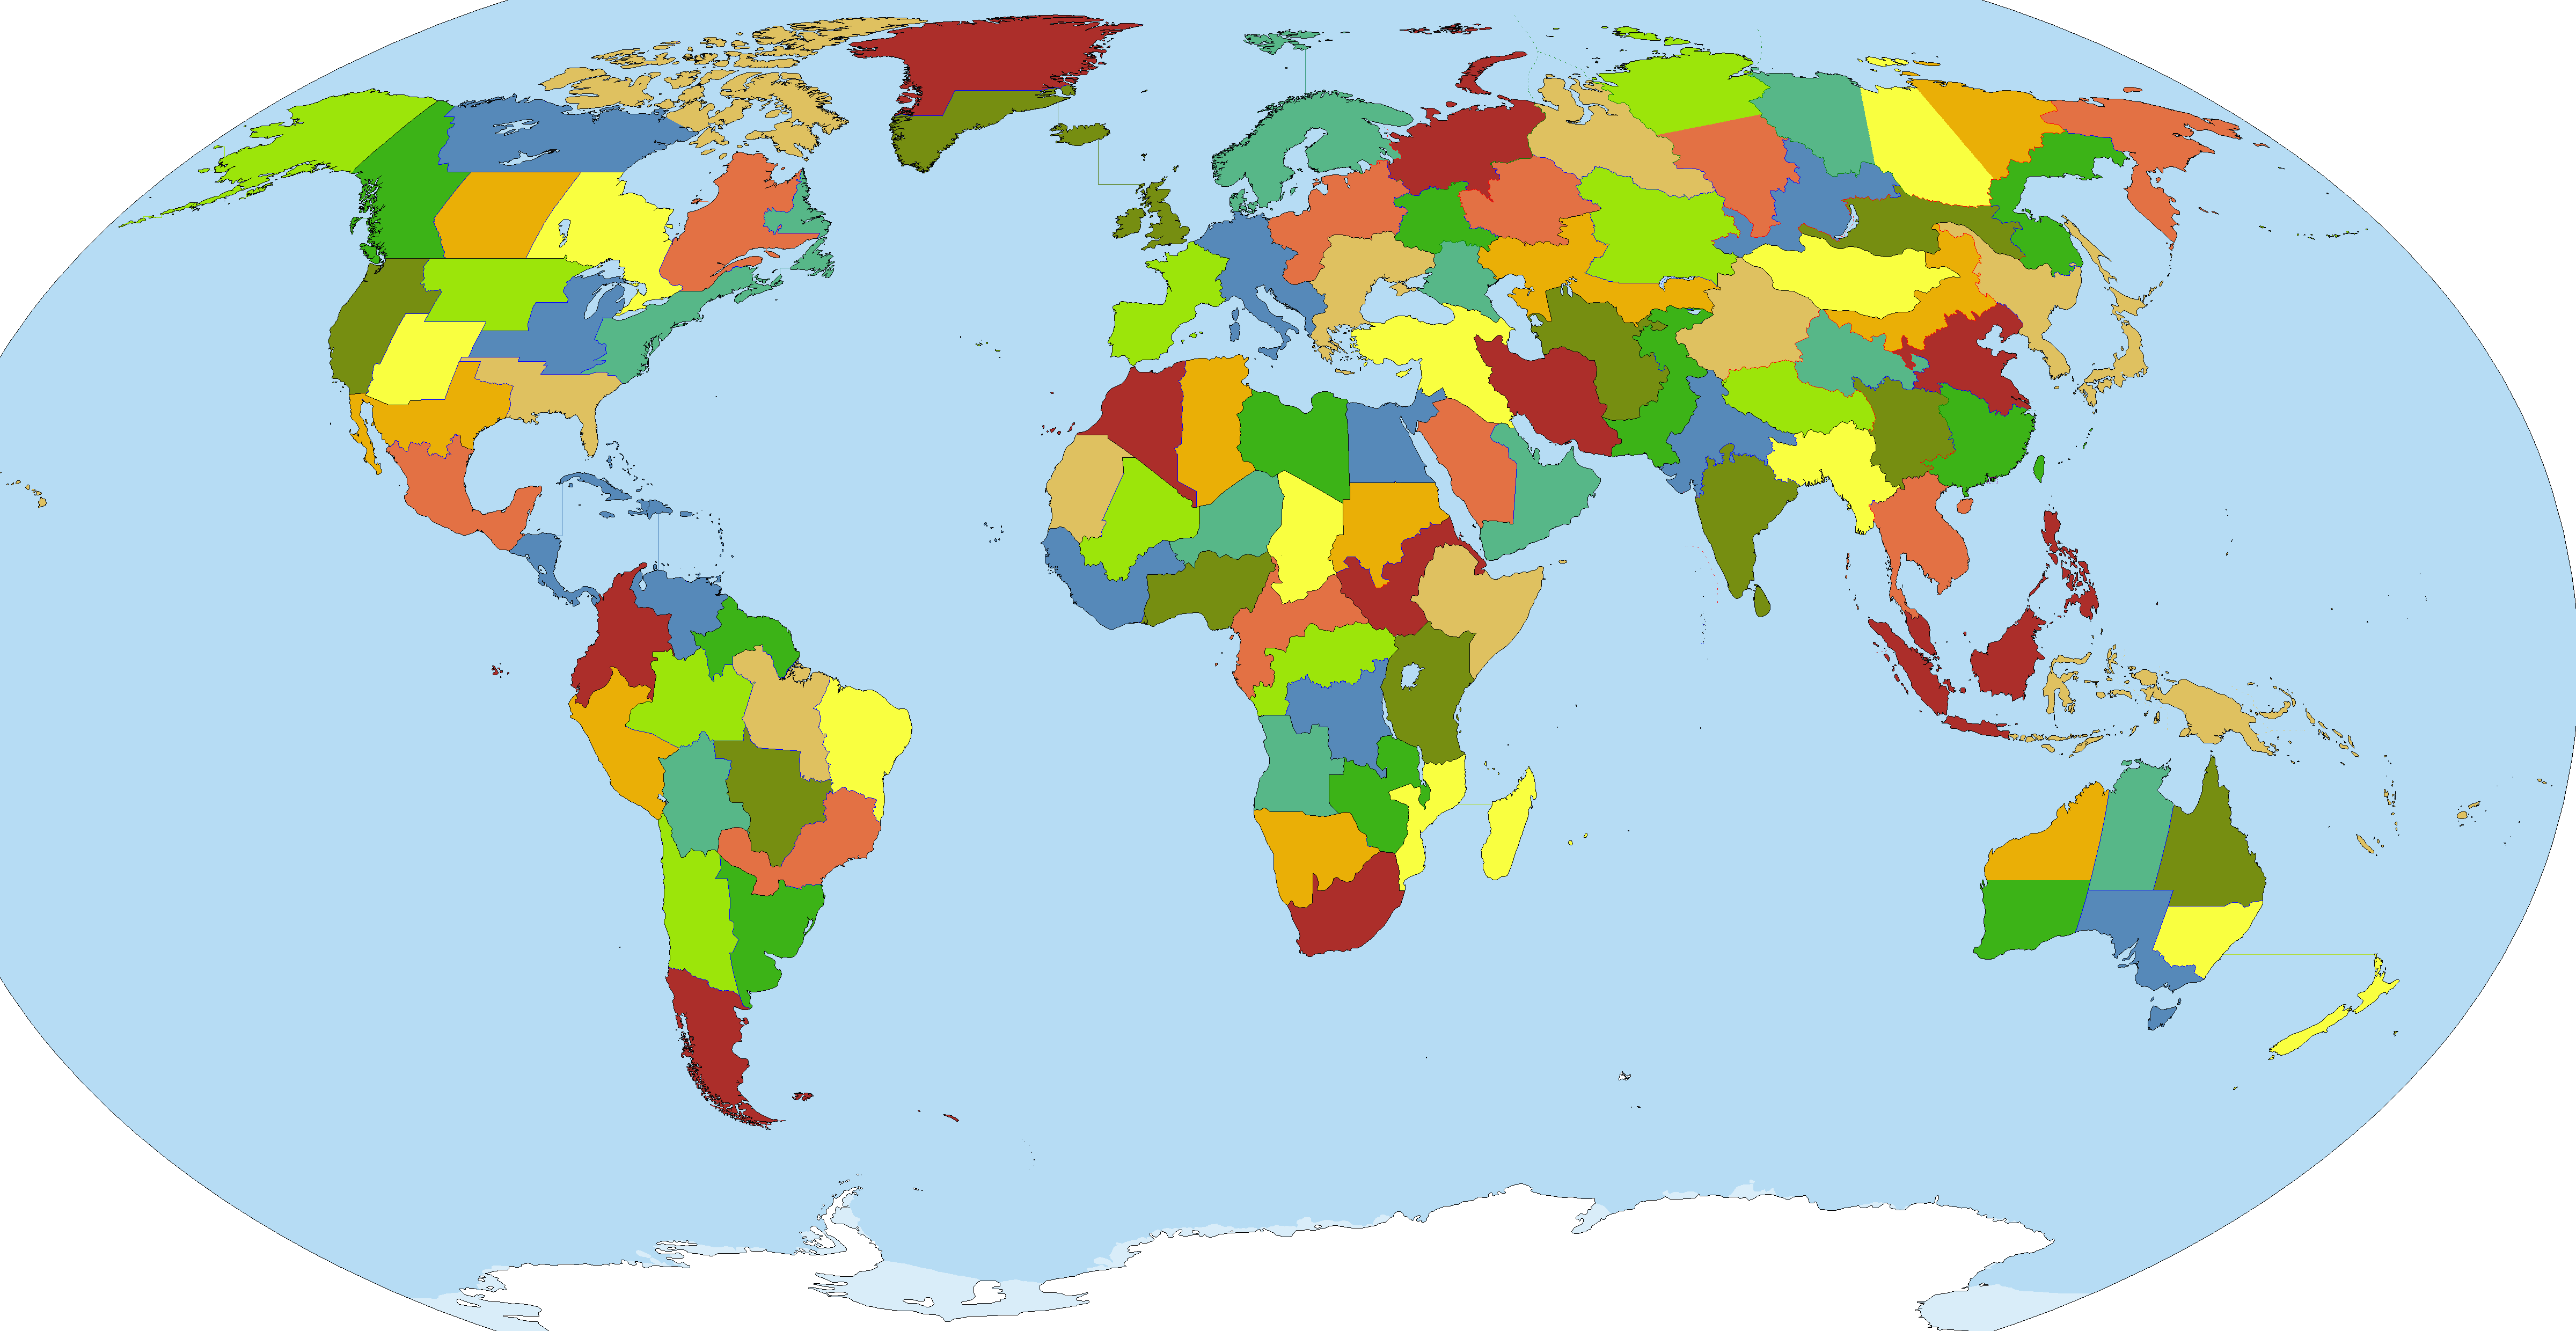 Si en el mundo hubiera sólo 100 países con una superficie similar